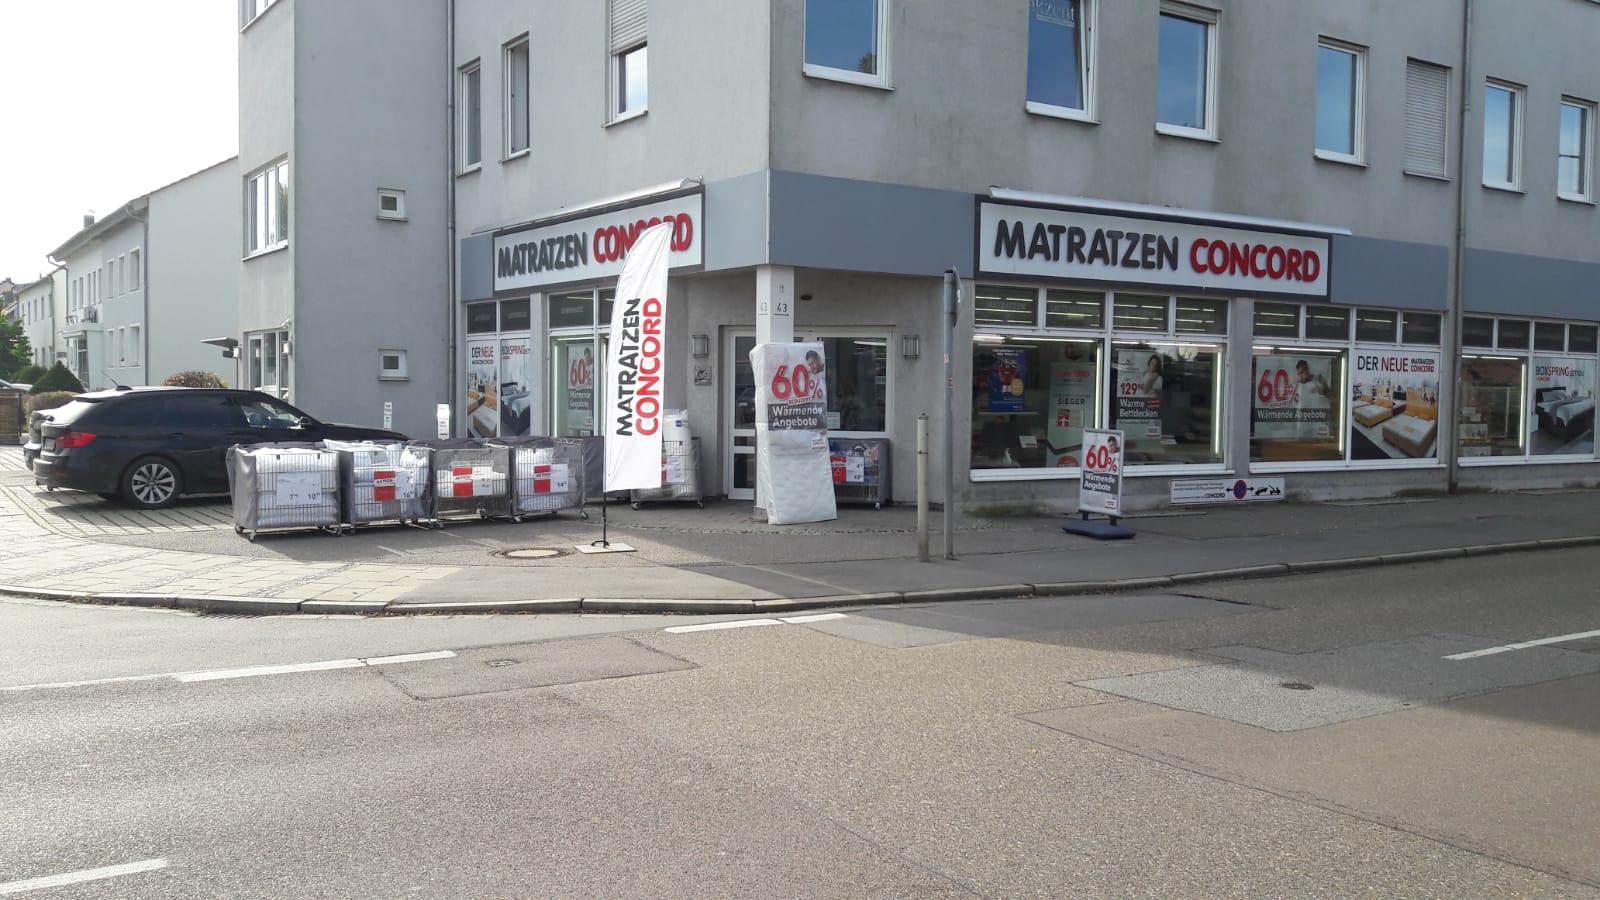 Bild 2 Matratzen Concord GmbH in Neutraubling